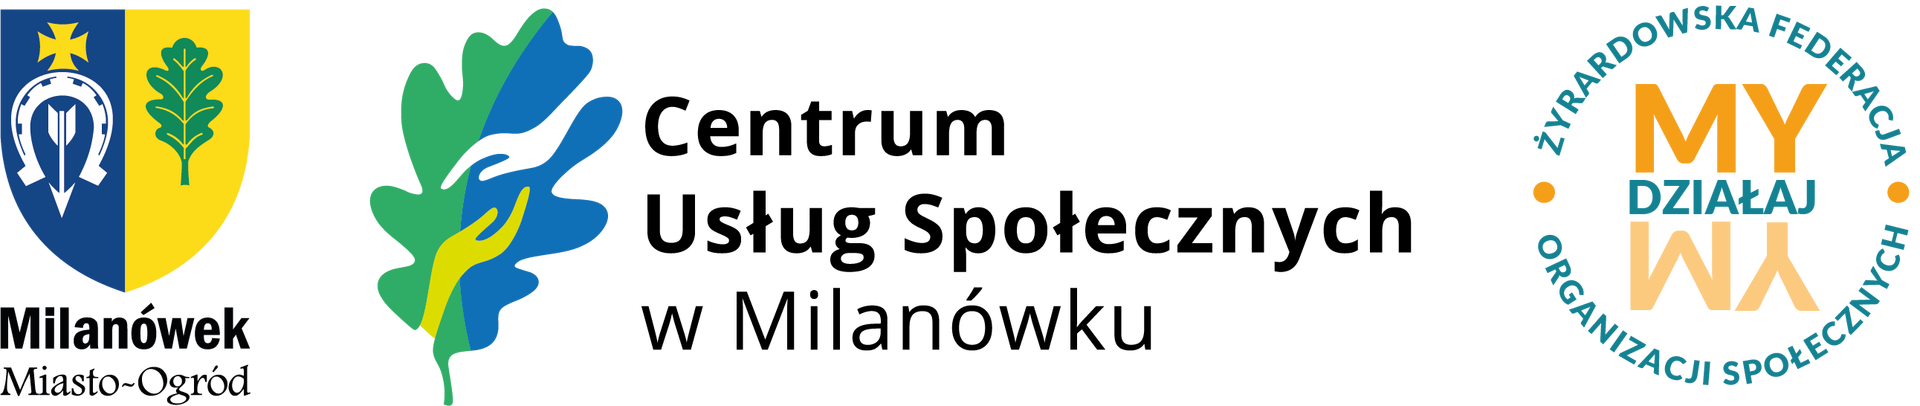 Herb miasta, logo CUS, logo organizacji DziałaMy